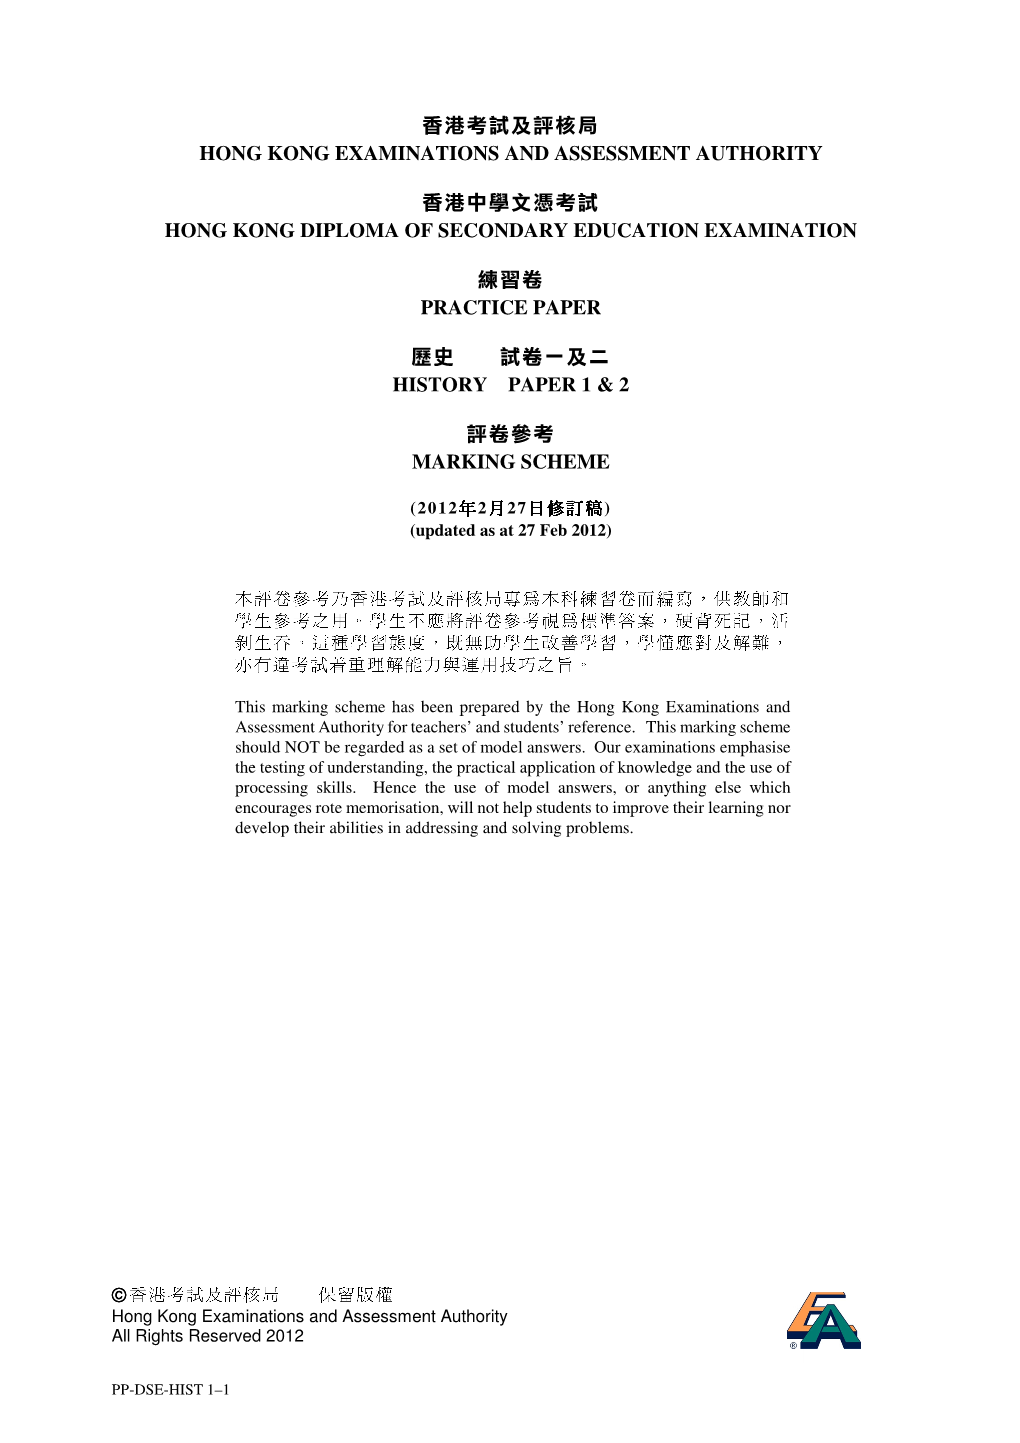 香港考試及評核局 Hong Kong Examinations and Assessment Authority 香港中學文憑考試 Hong Kong Diploma of Secondary